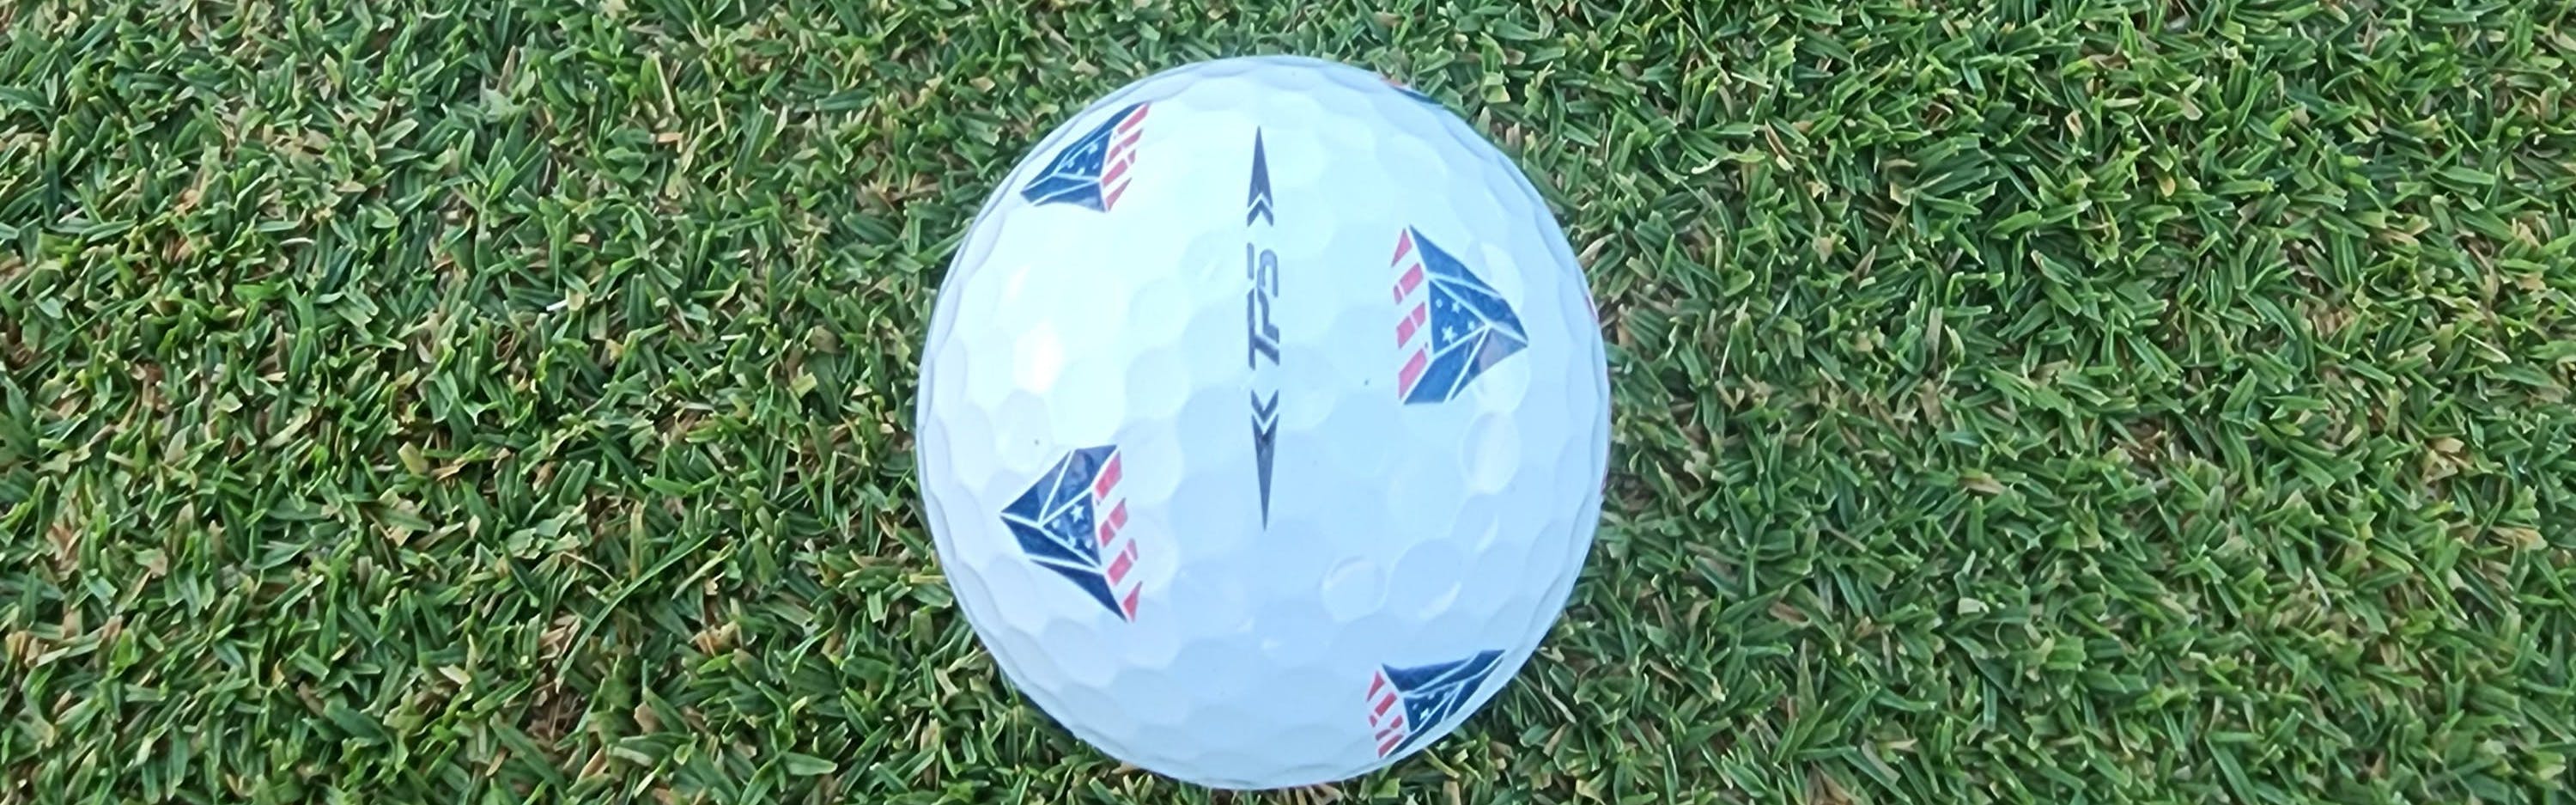 The TP5 Pix 2.0 golf ball. 